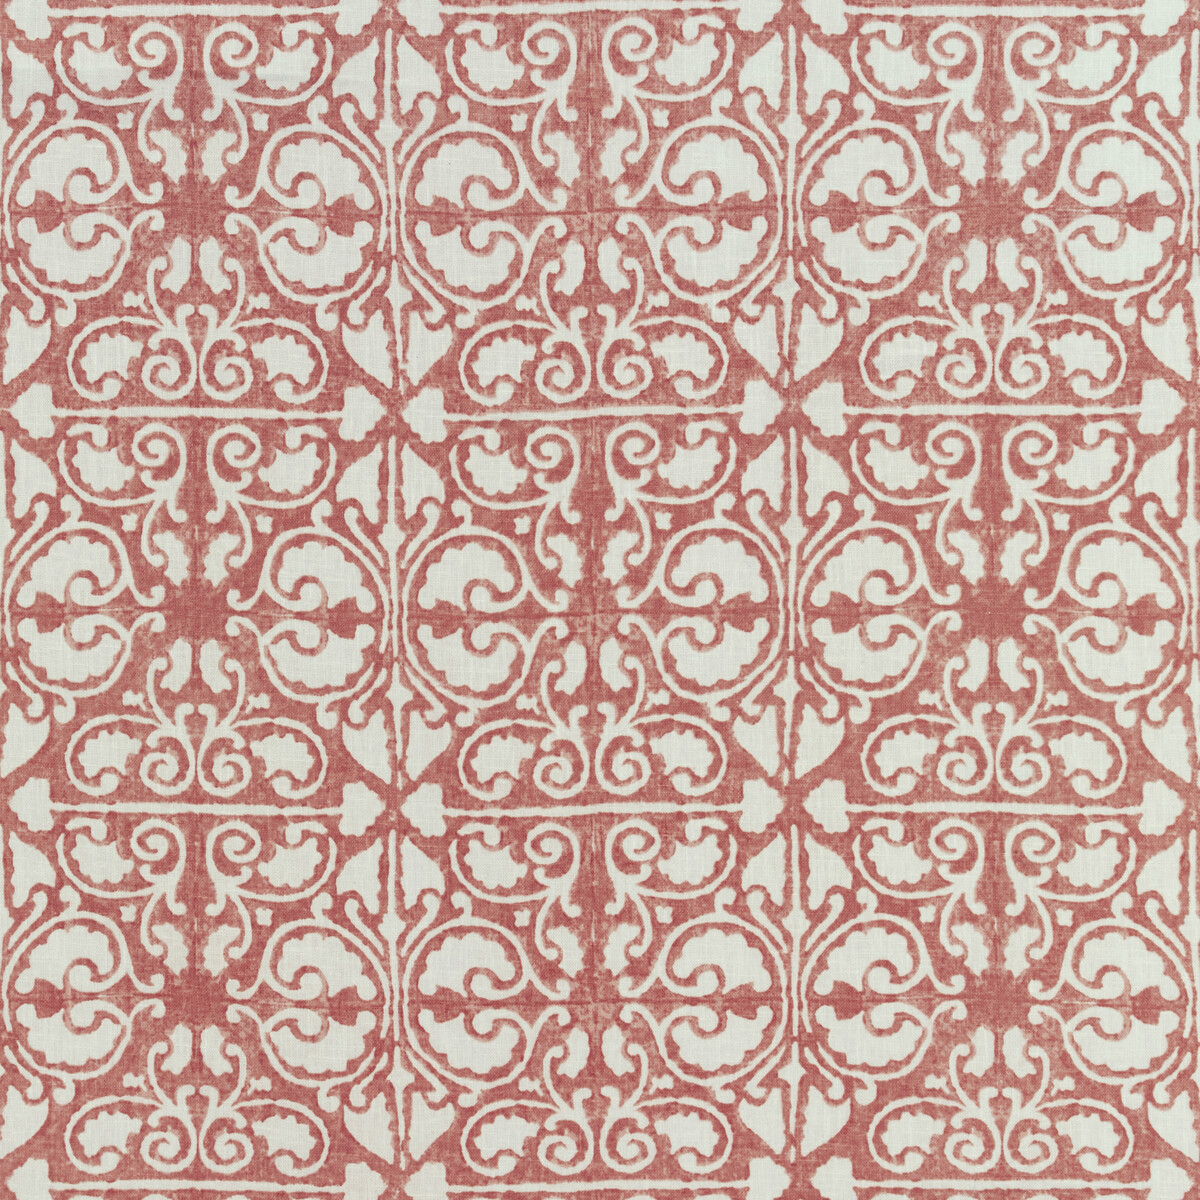 Kravet Basics Agra Tile.19.0 Kravet Basics Multipurpose Fabric in Agra Tile-19/Red/White